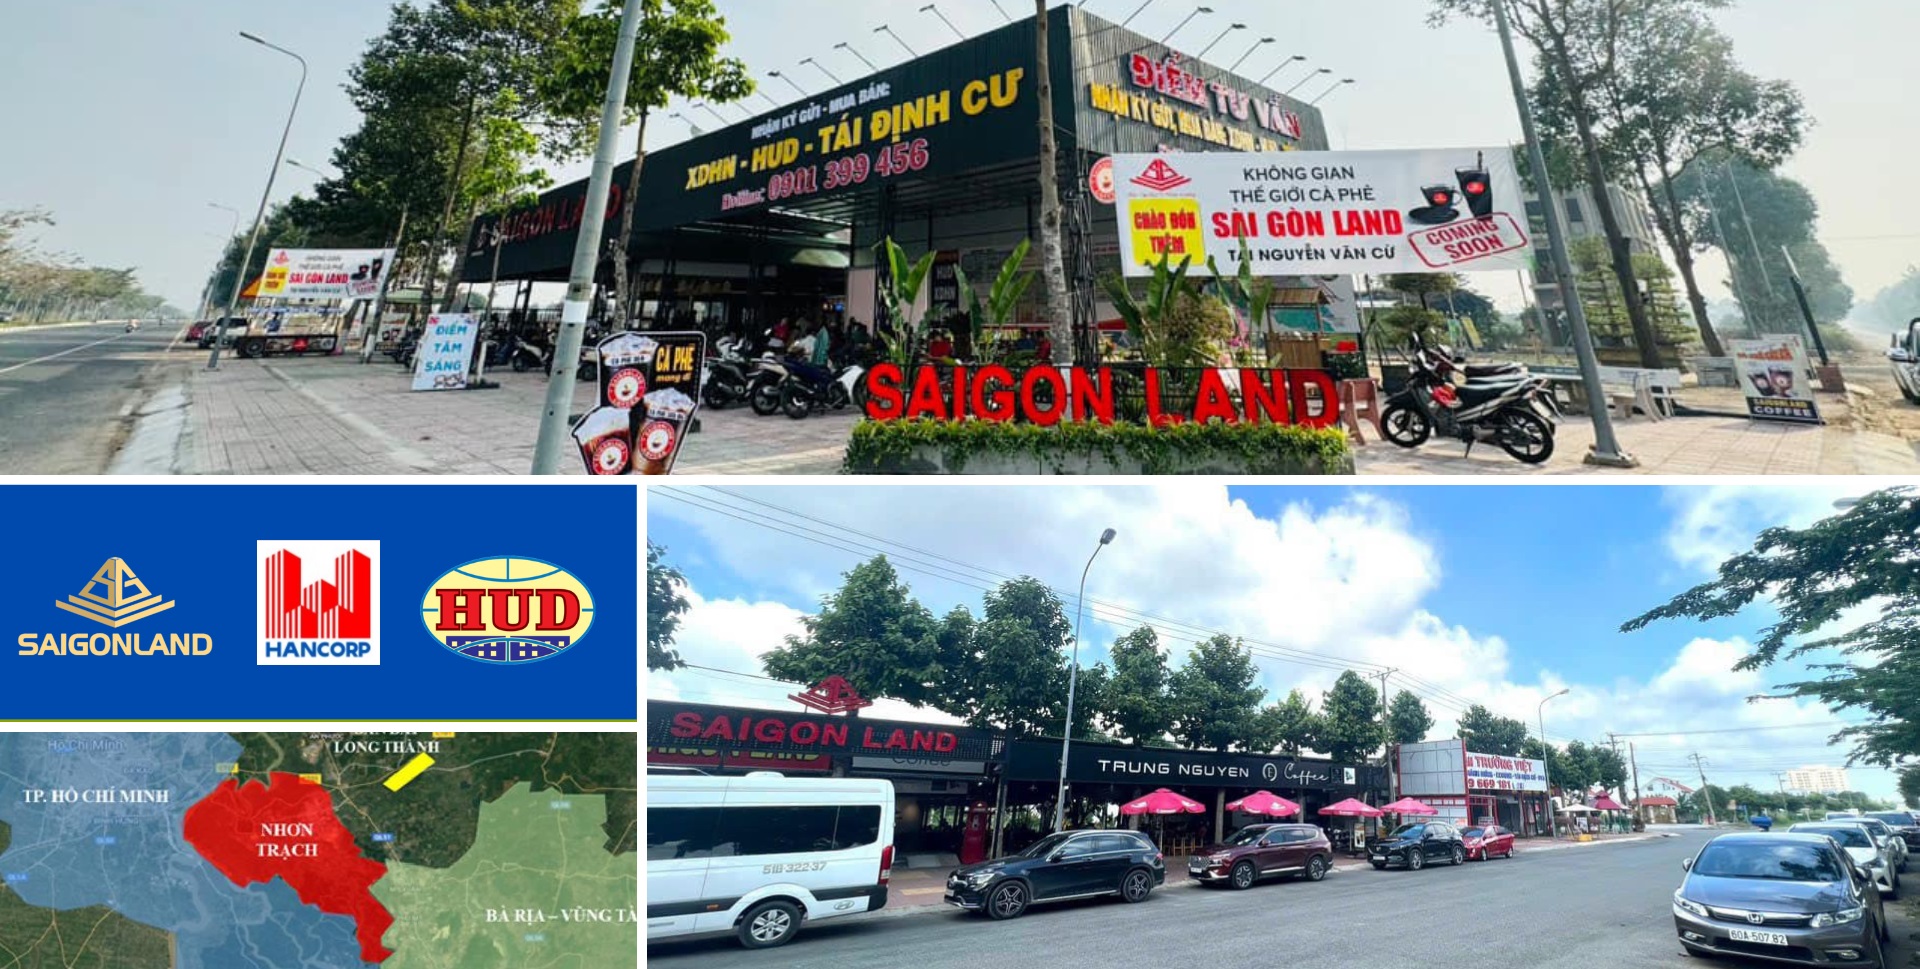 Saigonland Nhơn Trạch - Cần mua đất nền dự án Hud và Xây Dựng Hà Nội Nhơn Trạch Đồng Nai - Ảnh chính